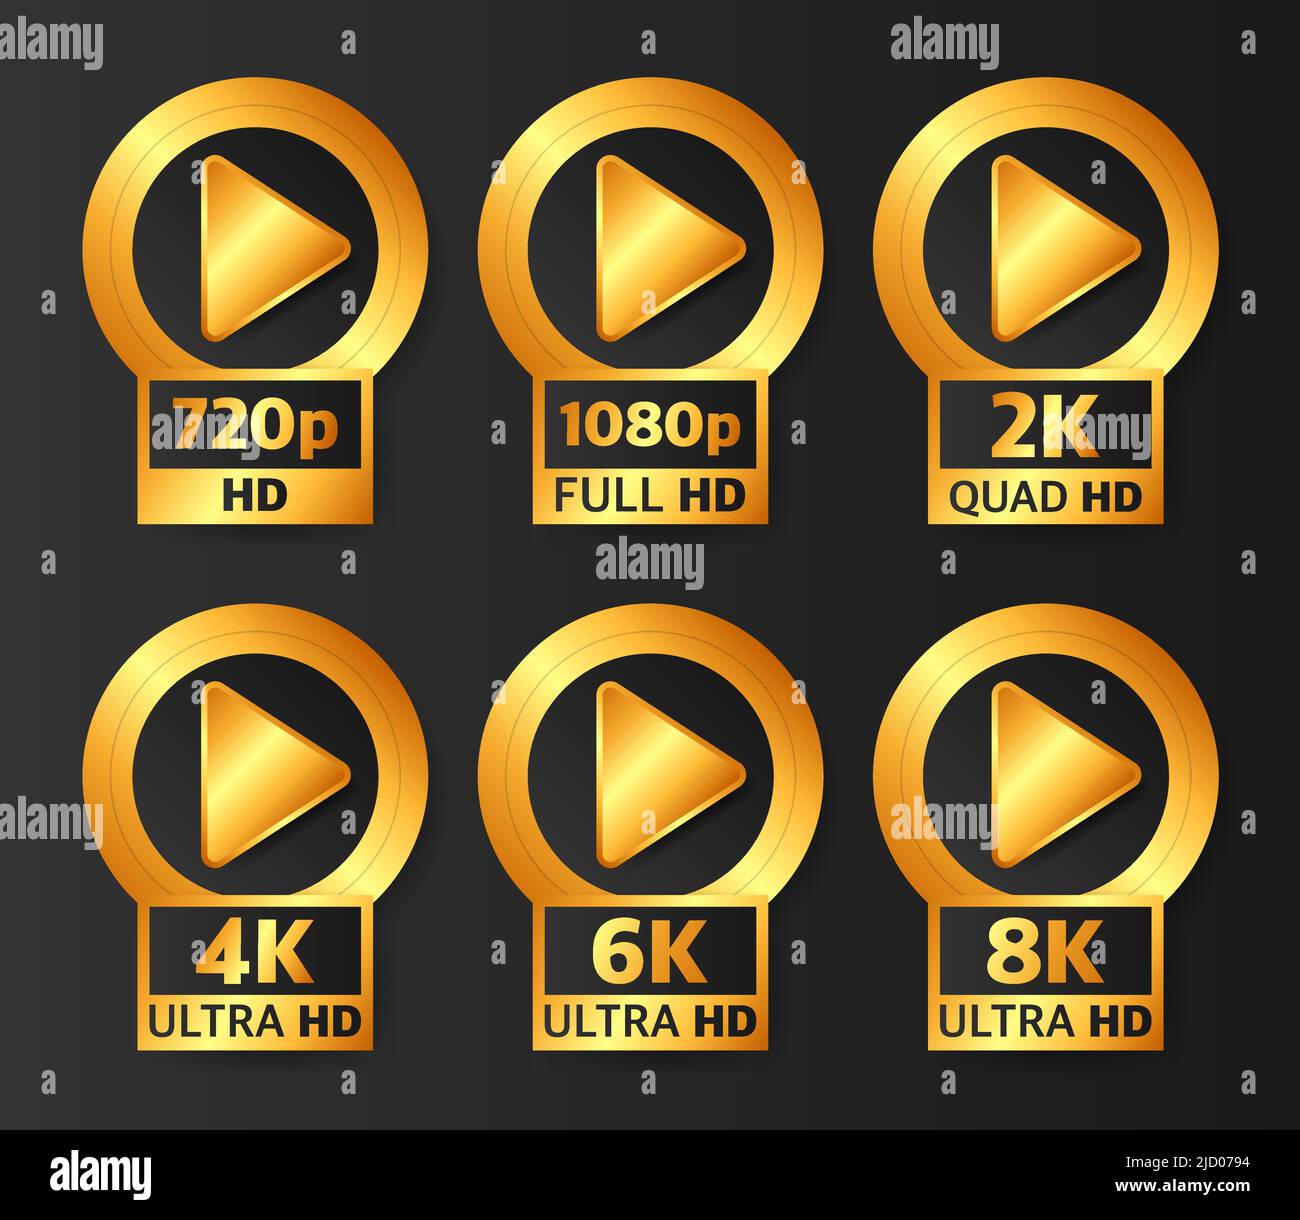 Badges de qualité vidéo de couleur or sur fond noir. HD, Full HD, 2K, 4K, 6K et 8K. Illustration vectorielle. Illustration de Vecteur